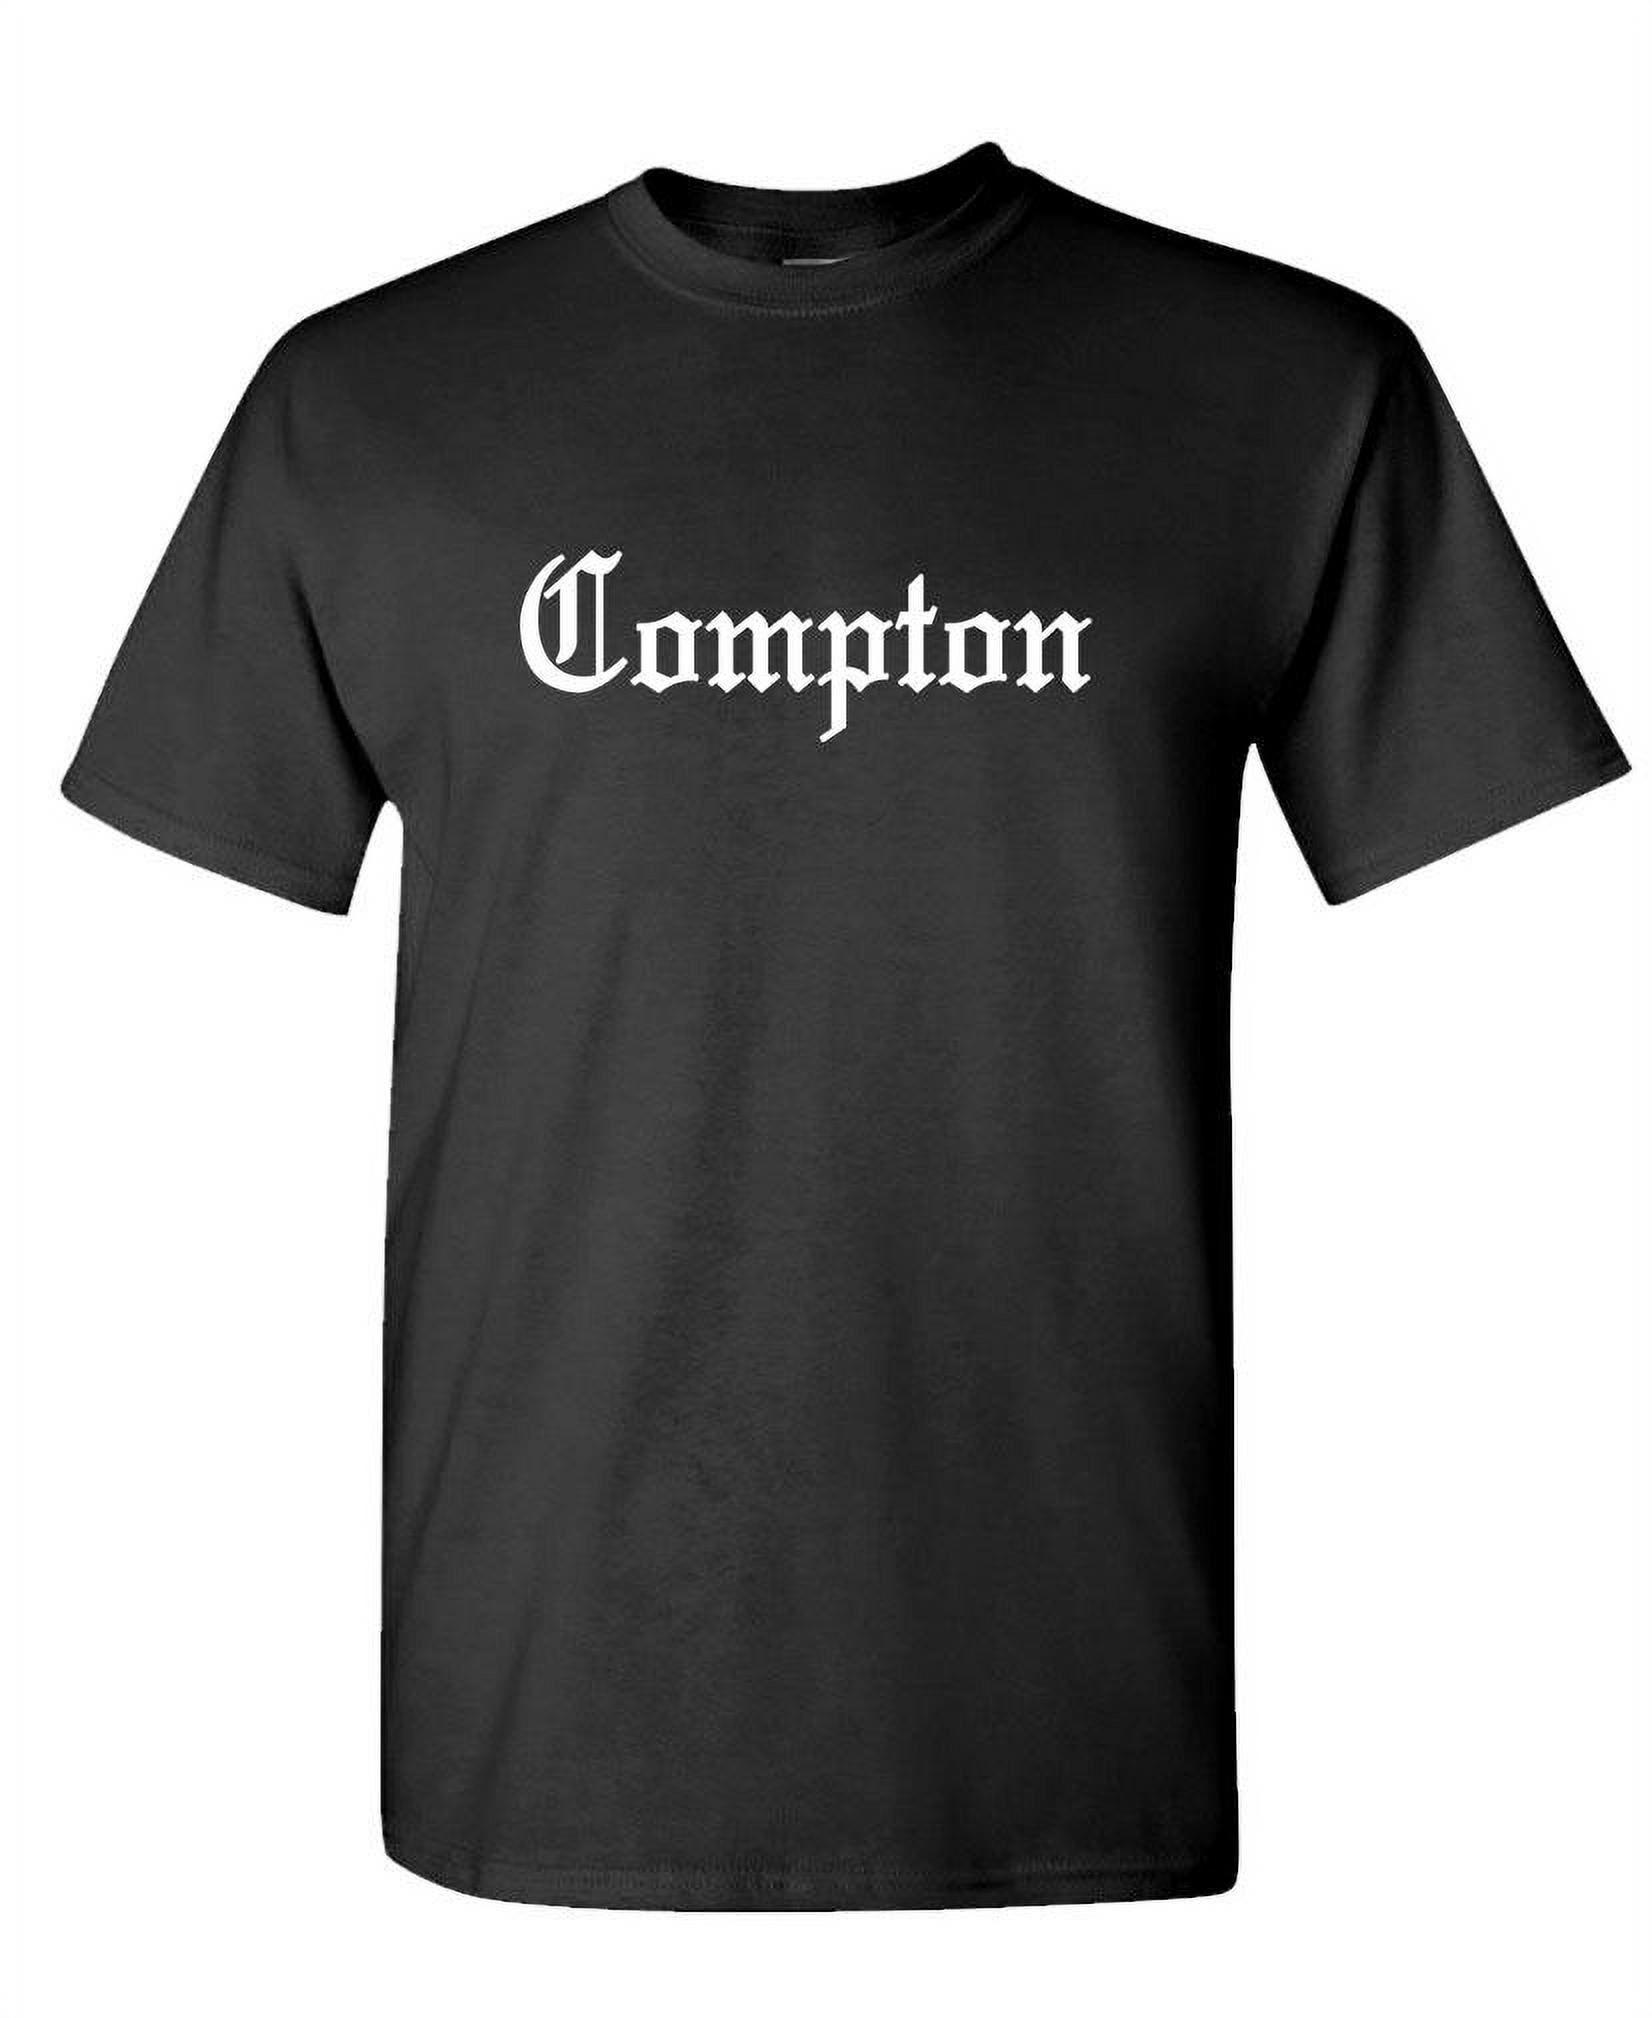 COMPTON - retro dre hip hop rap eazy e - Cotton Unisex T-Shirt - image 1 of 1